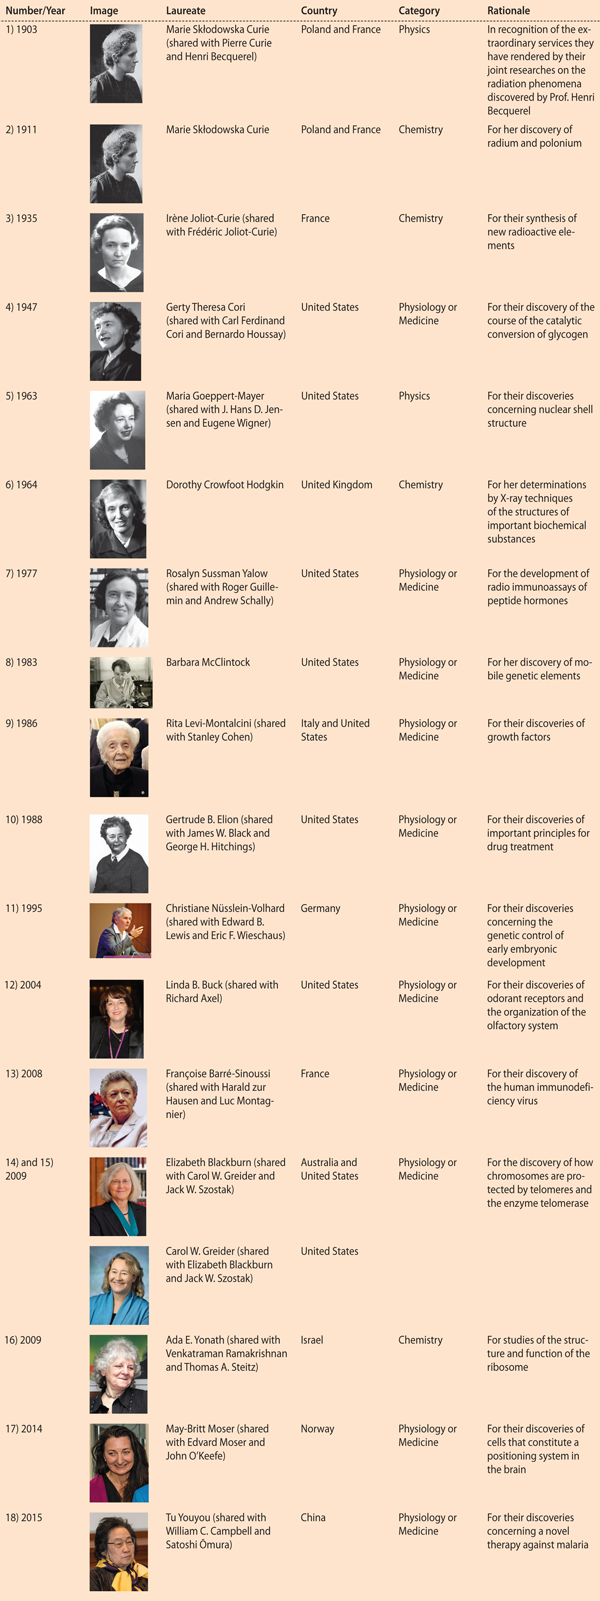 Table 1. Female Scientific Nobel Laureates